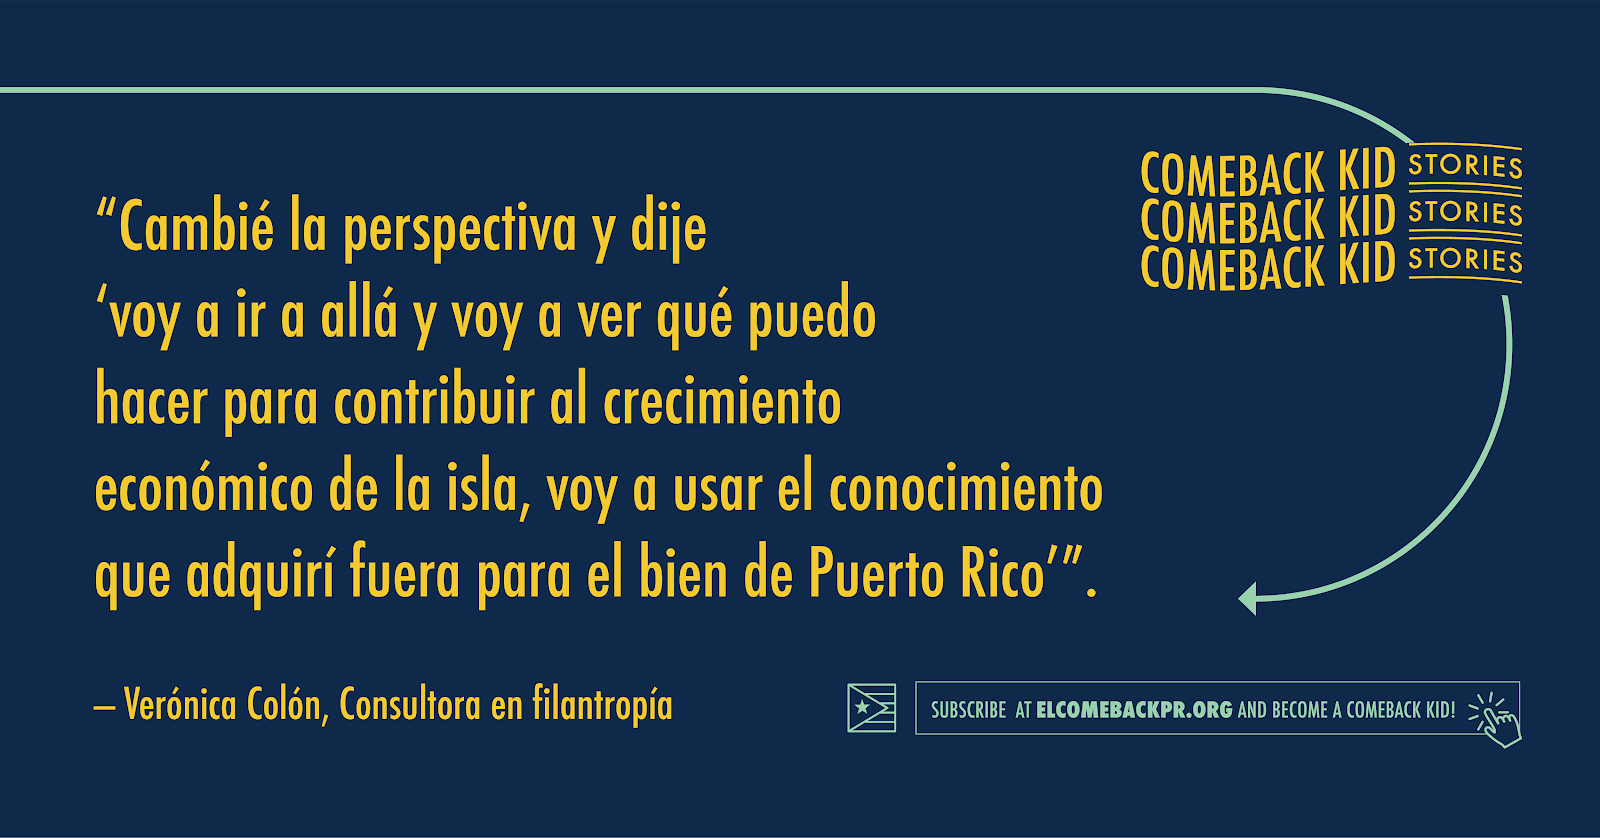 Gráfica con cita "Cambié la perspectiva y dije 'voy a ir a allá y voy a ver qué puedo hacer para contribuir al crecimiento económico de la isla, voy a usar el conocimiento que adiquirí fuera para el bien de Puerto Rico"
-Verónica Colón, consultora en filantropía